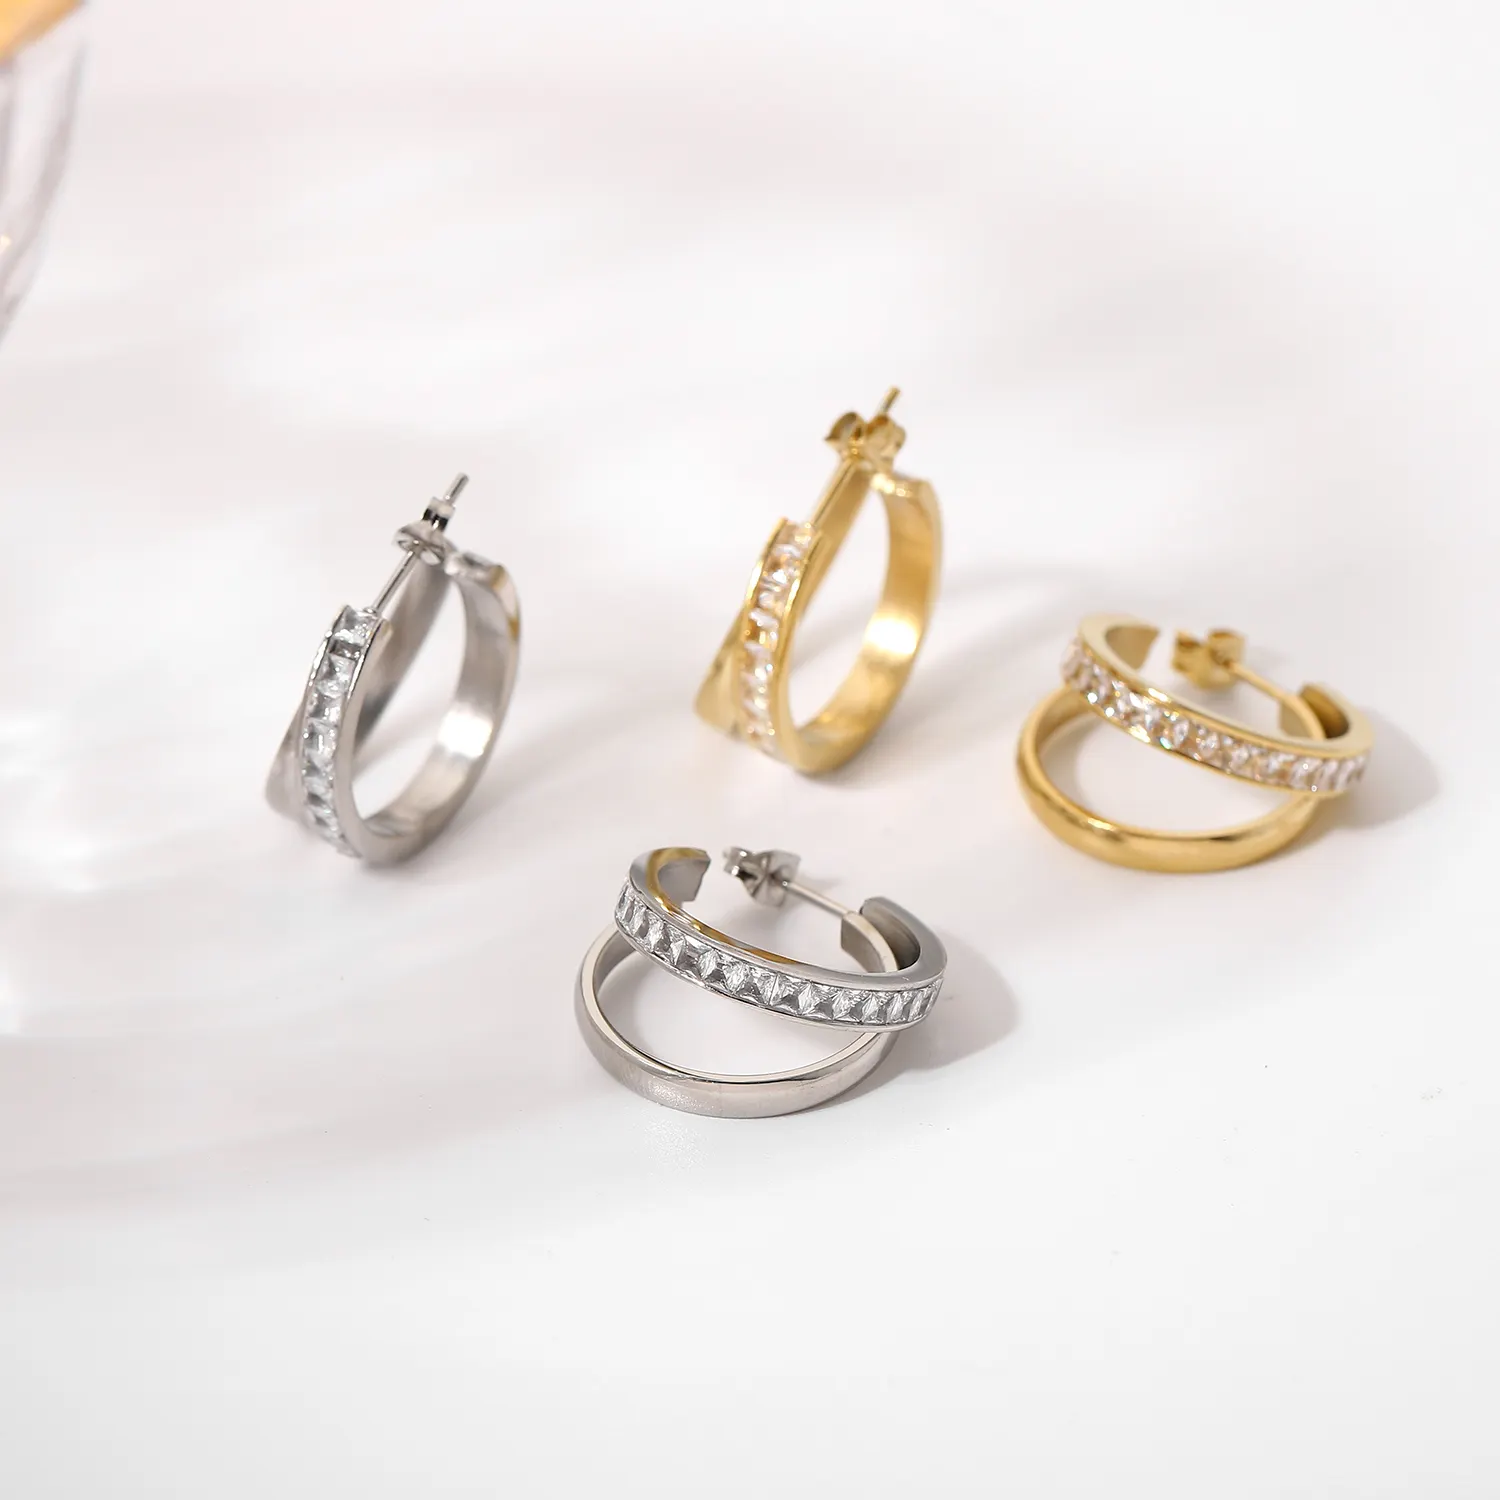 Fancy Design 14K Gold Silver Stainless Steel Earring Jewelry Double Layer Zircon Stud Earrings For Women